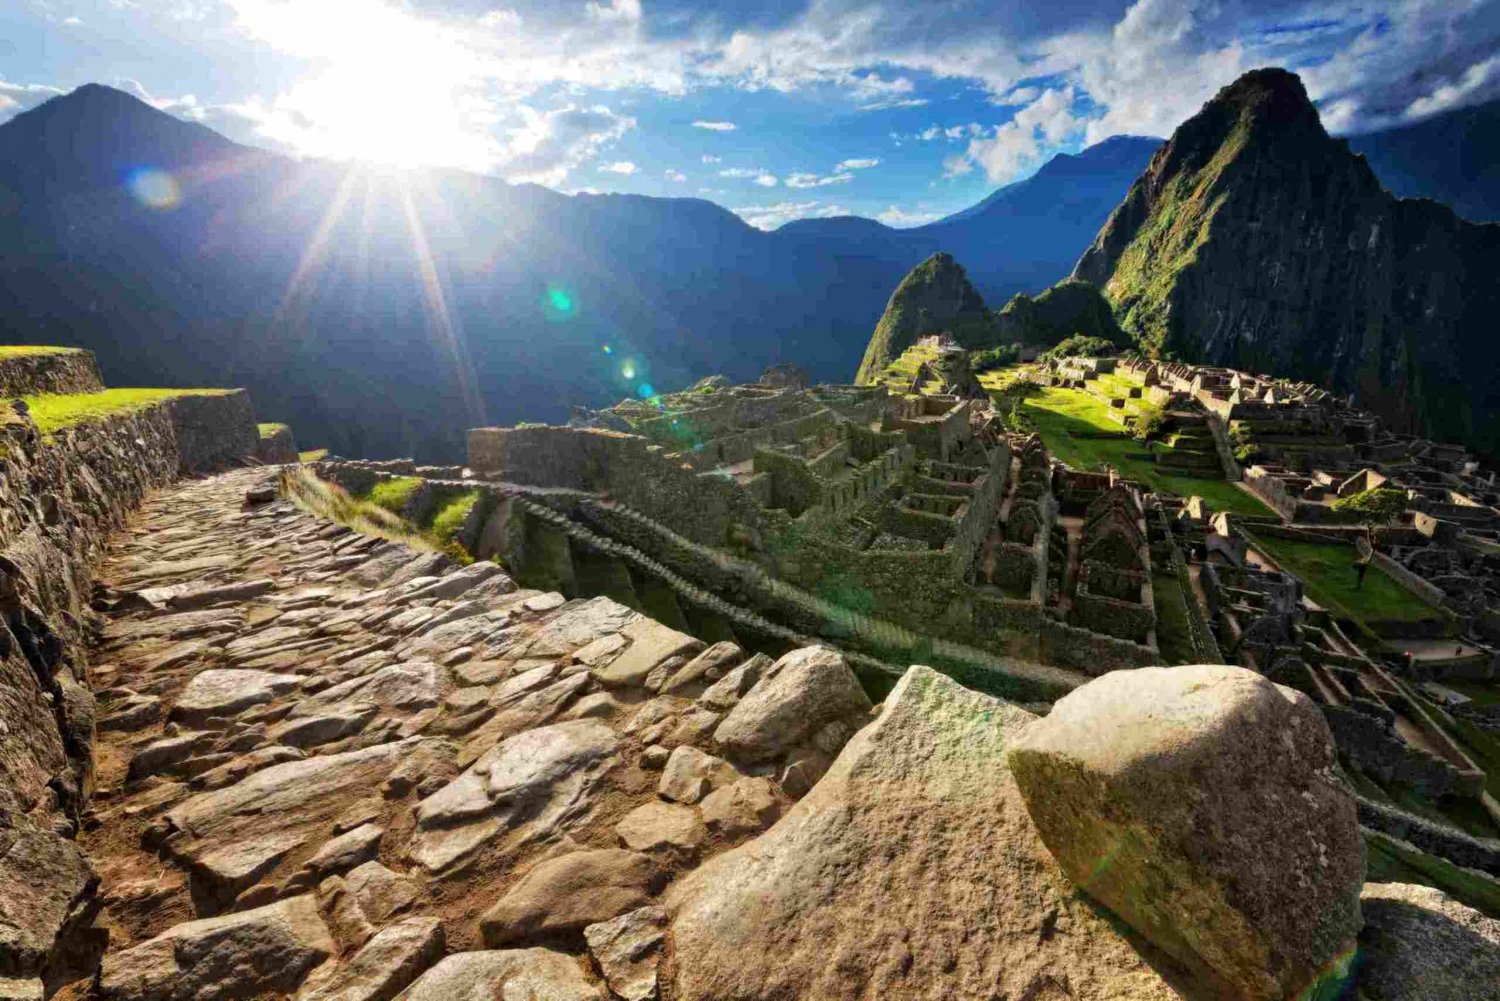 Best tour trails in Machu Picchu, Peru